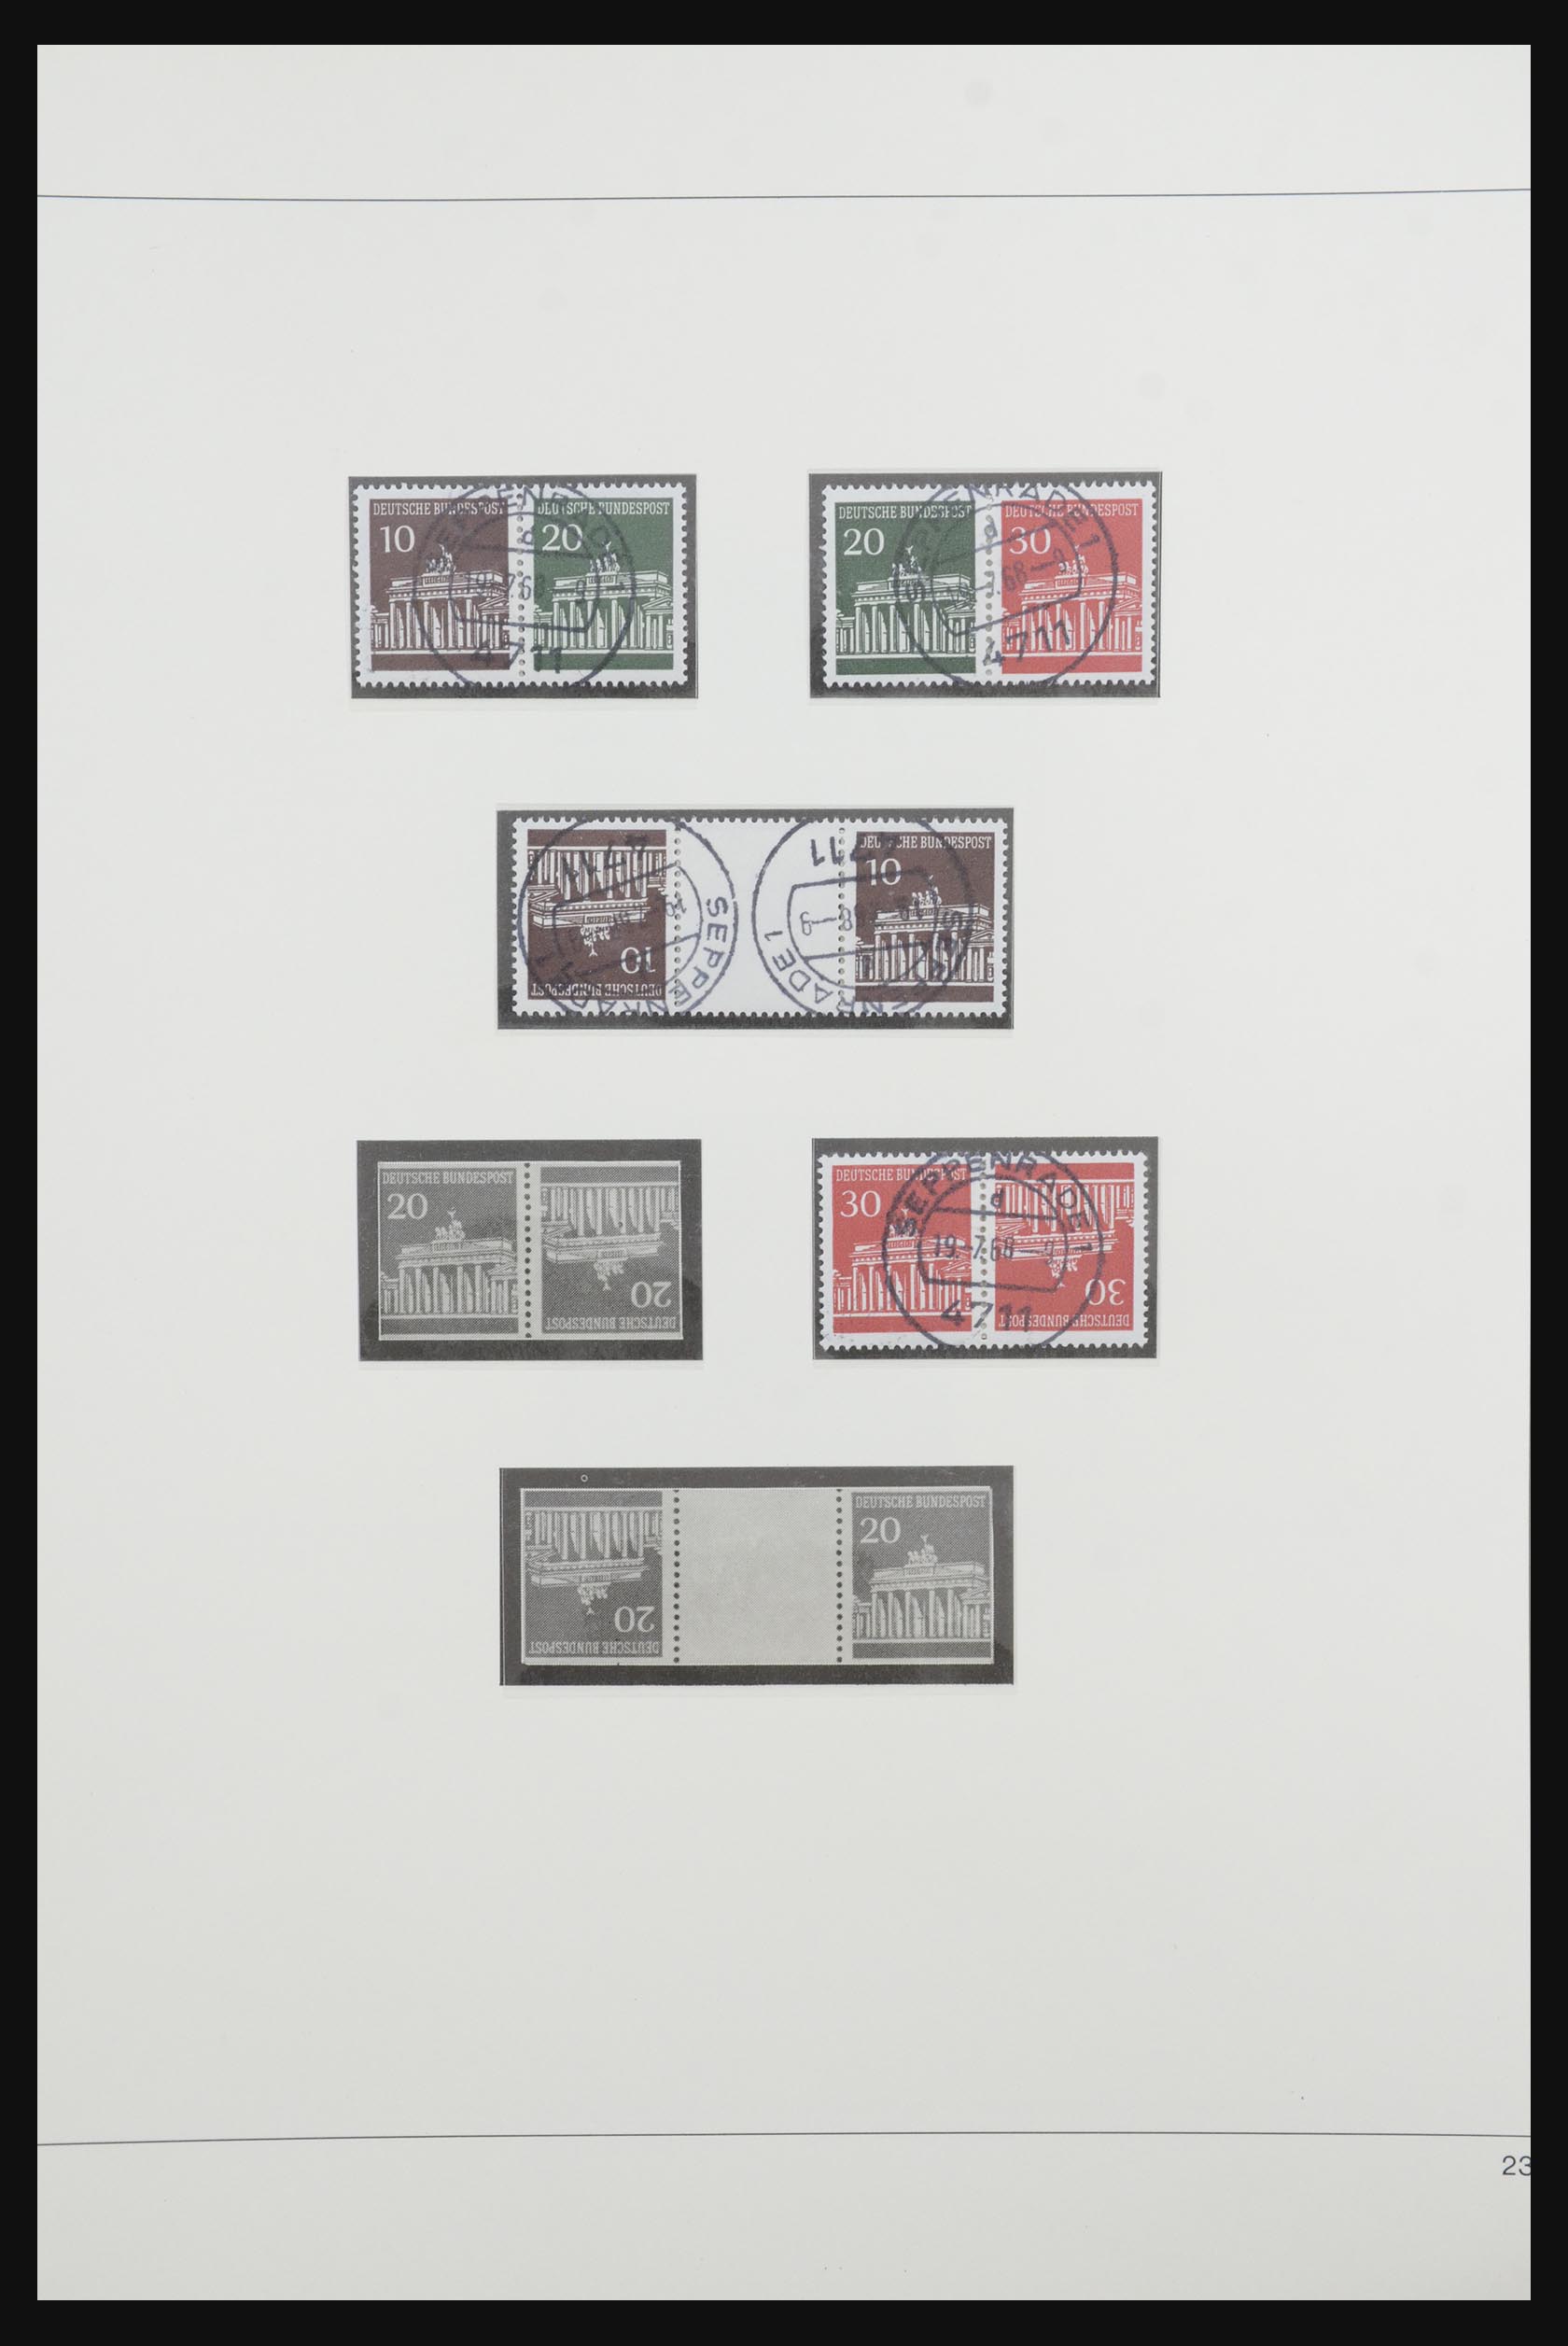 31842 032 - 31842 Bundespost combinaties 1951-2003.